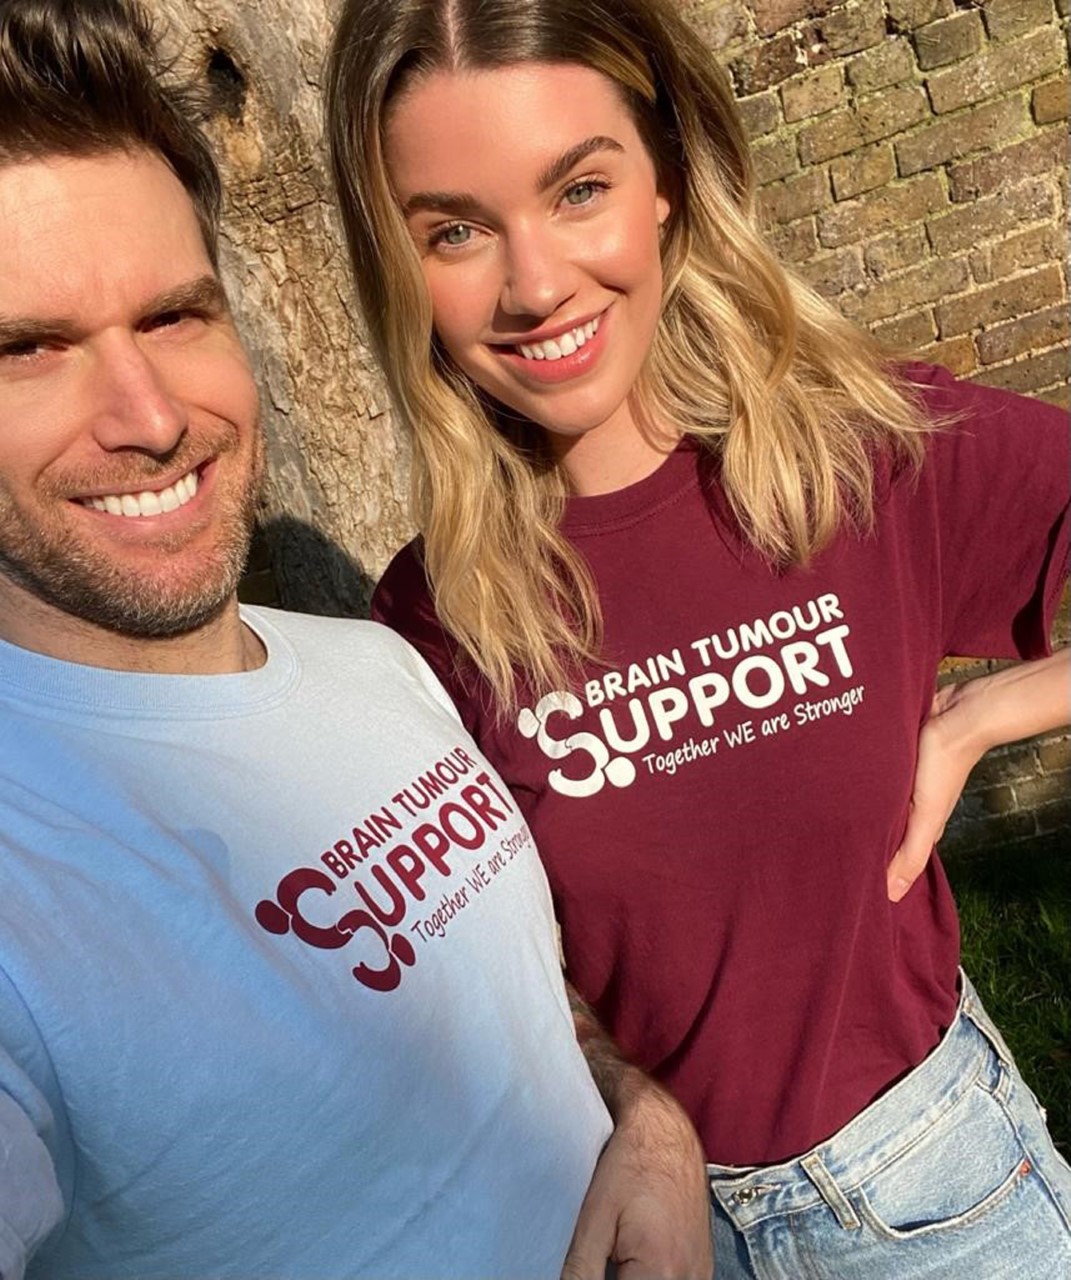 TV star Joel Dommett and model Hannah Cooper become Ambassadors for Bristol-based Brain Tumour Support